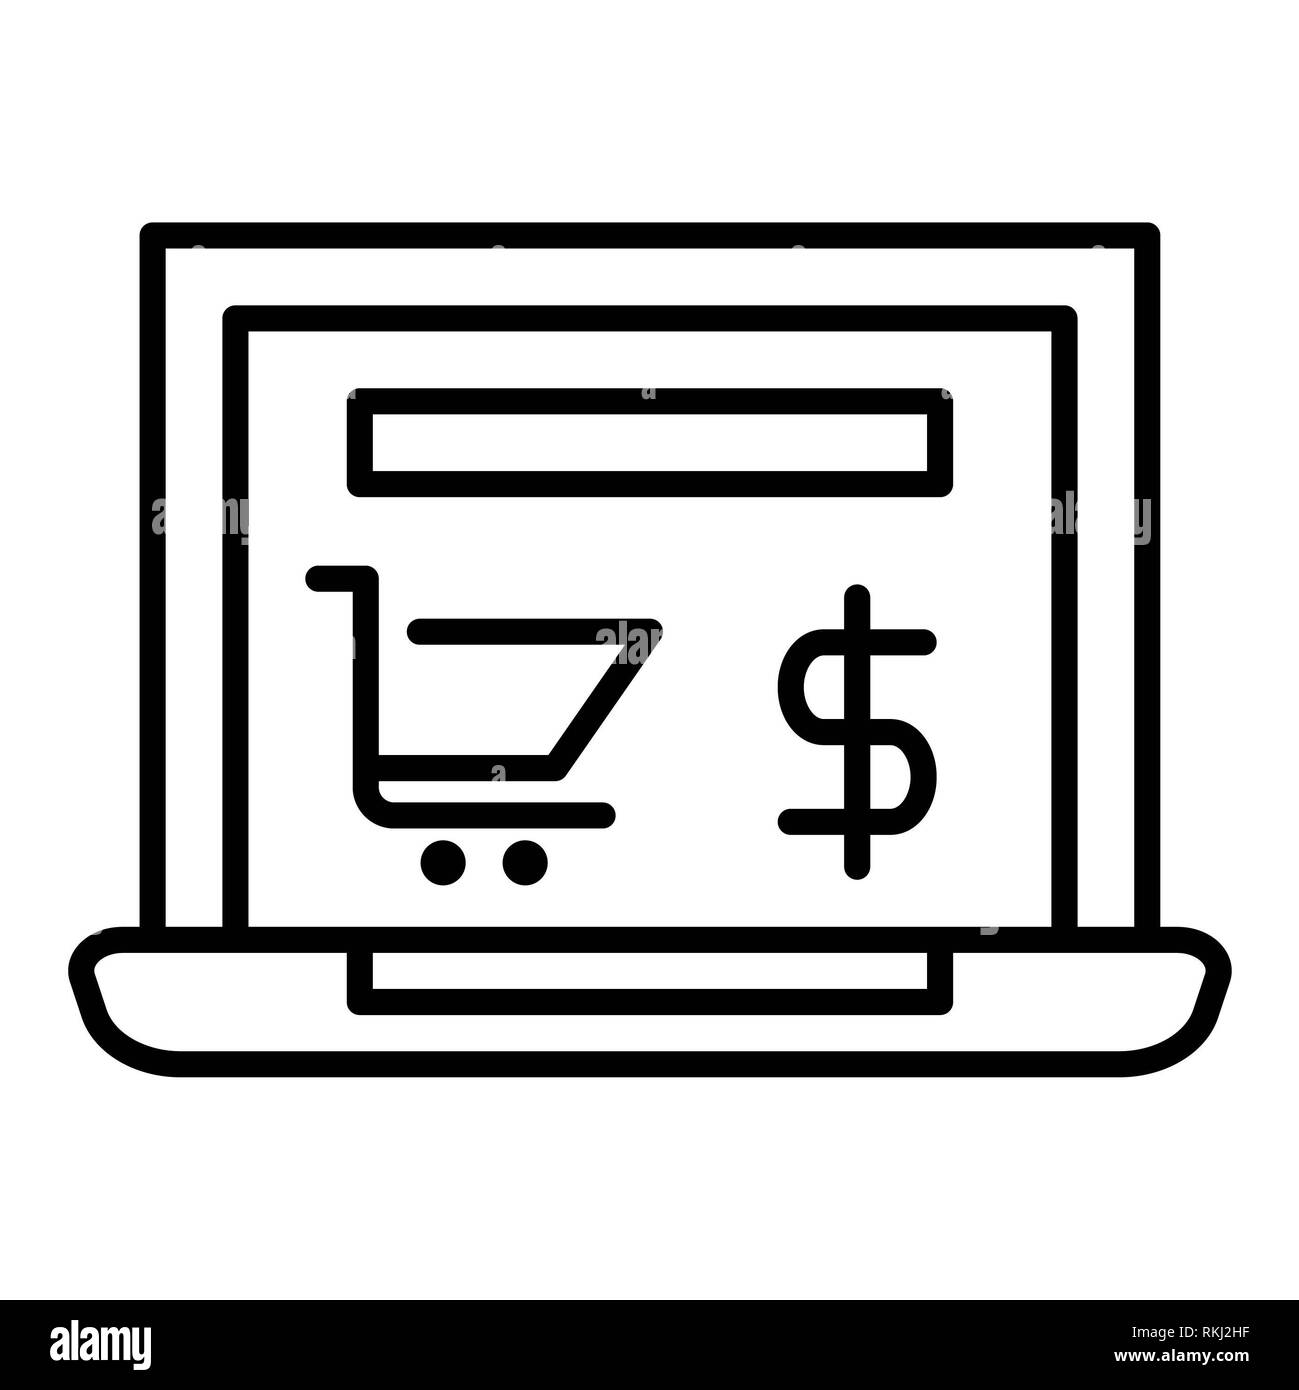 Tienda Online Icono, ilustración vectorial, esquema de E-commerce Foto de stock